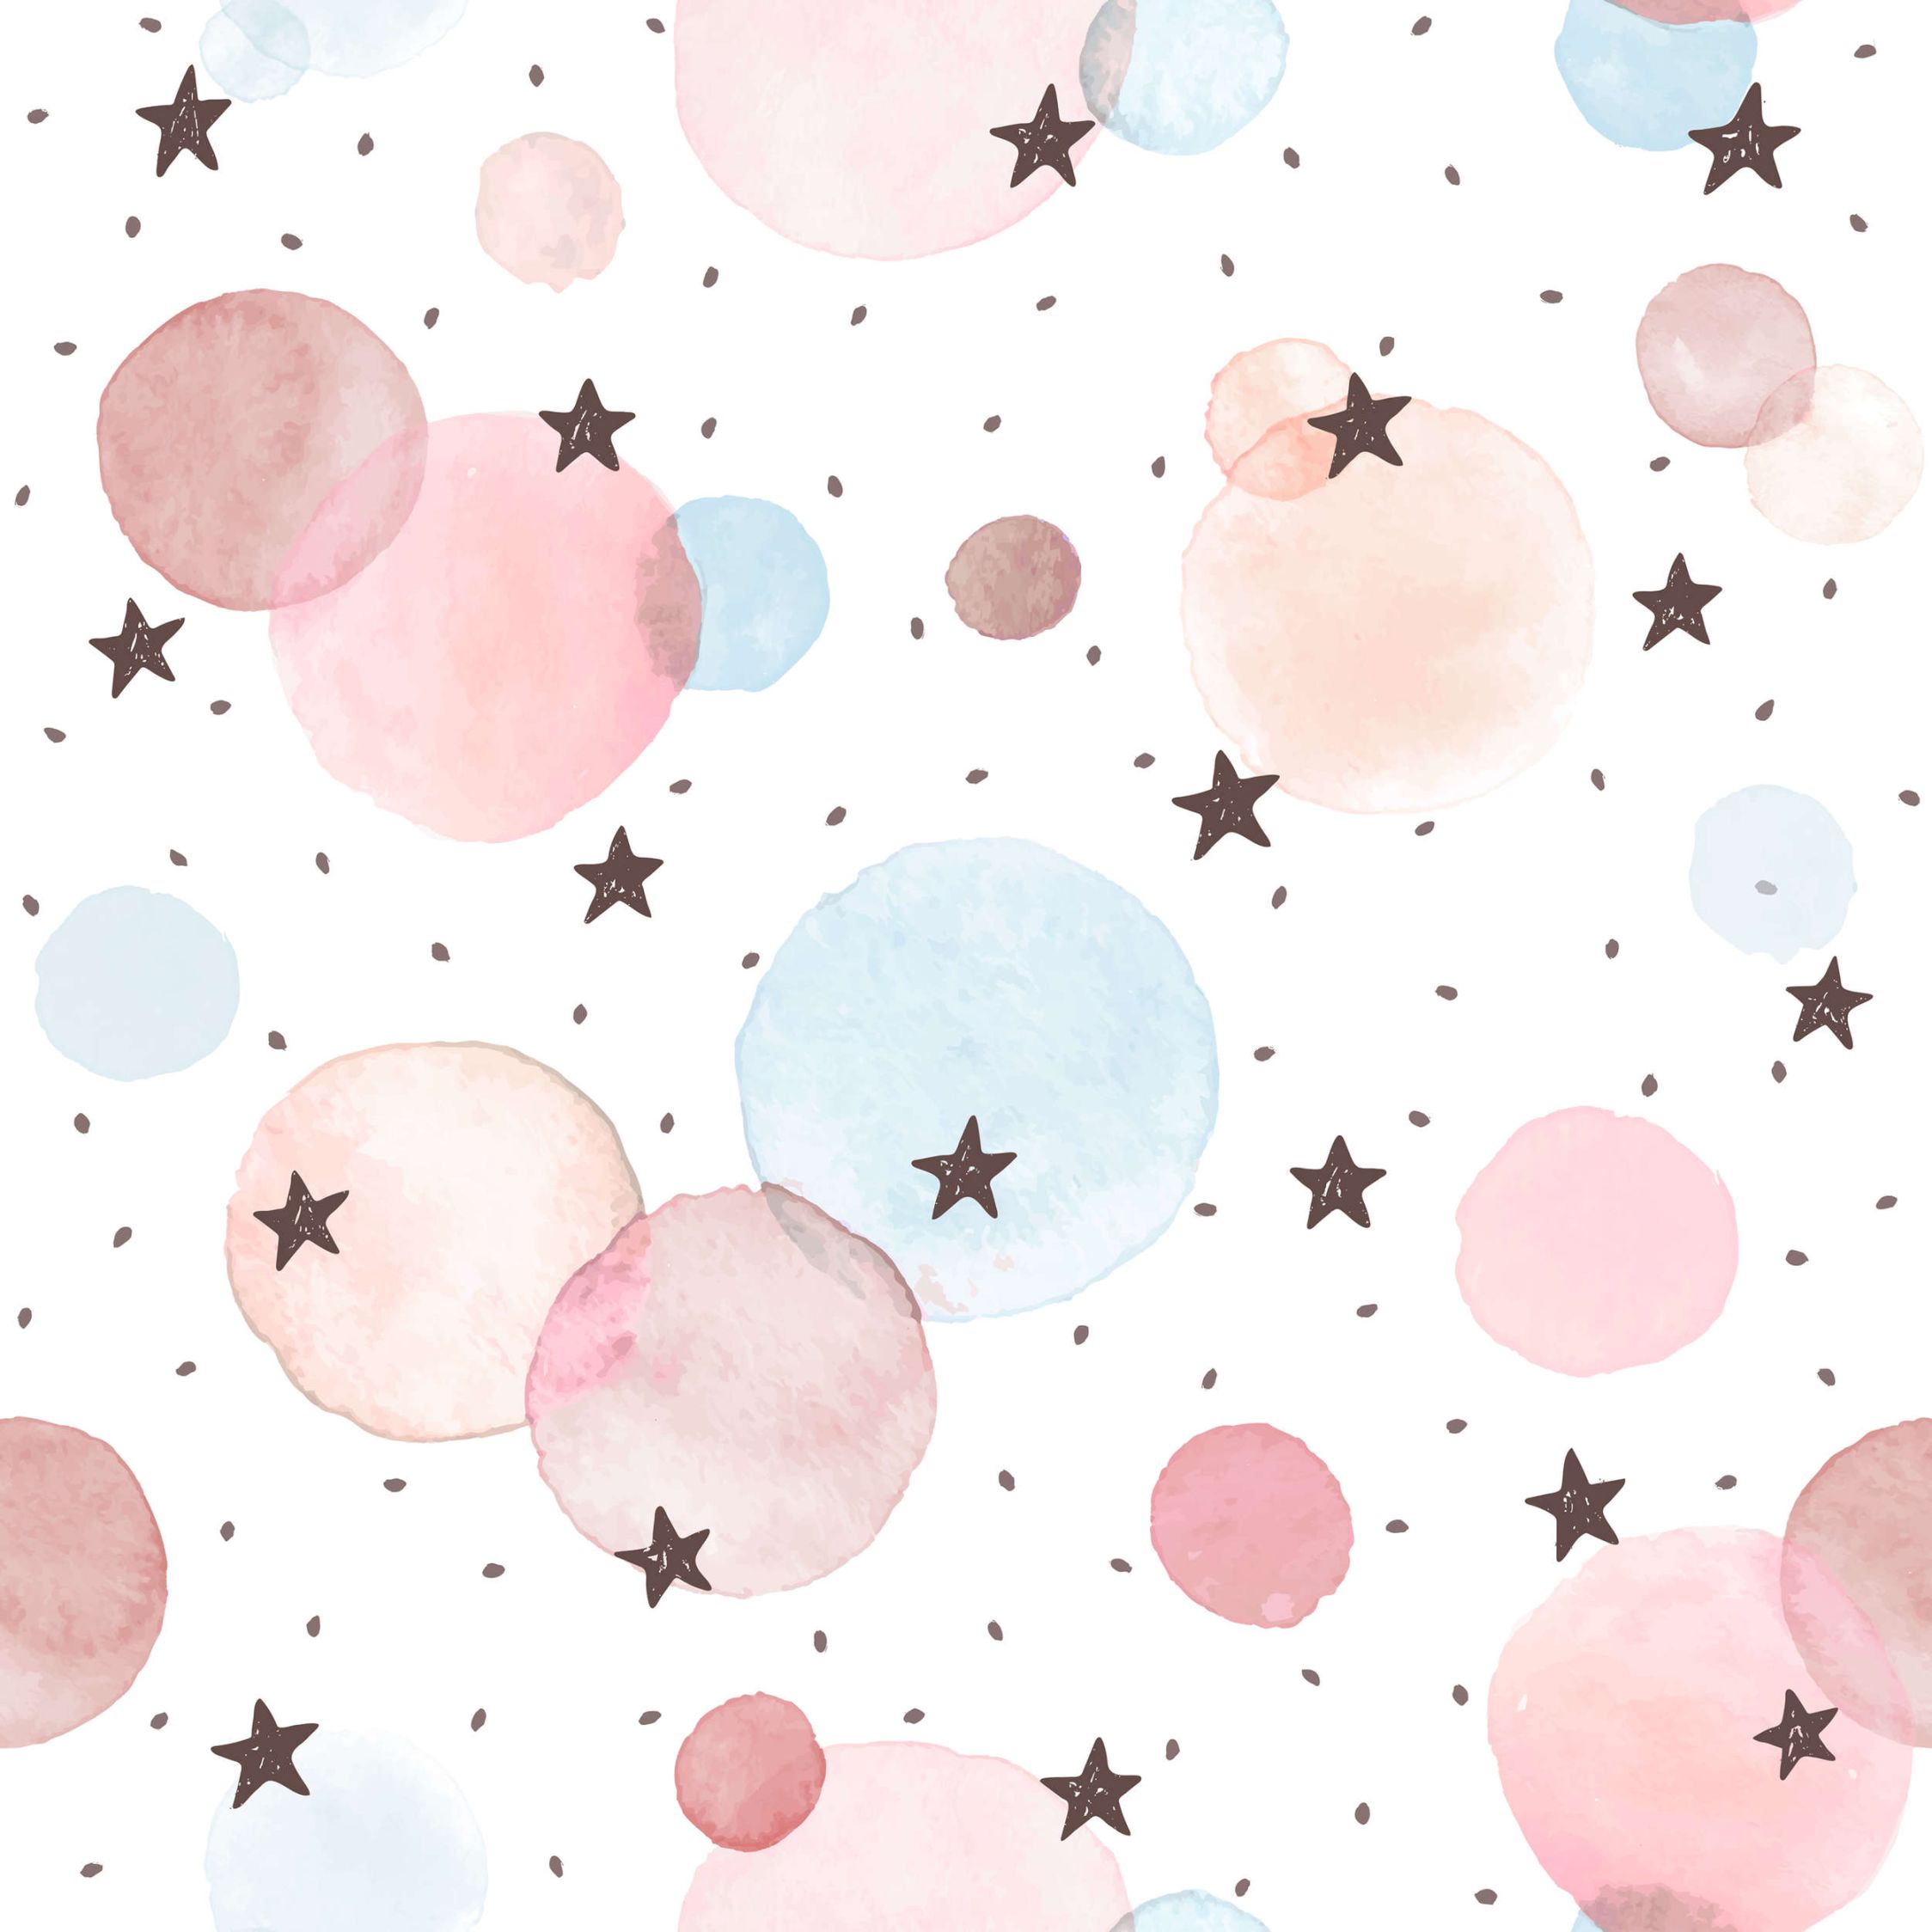             papiers peints à impression numérique pour chambre d'enfant avec étoiles, points et cercles - intissé structuré
        